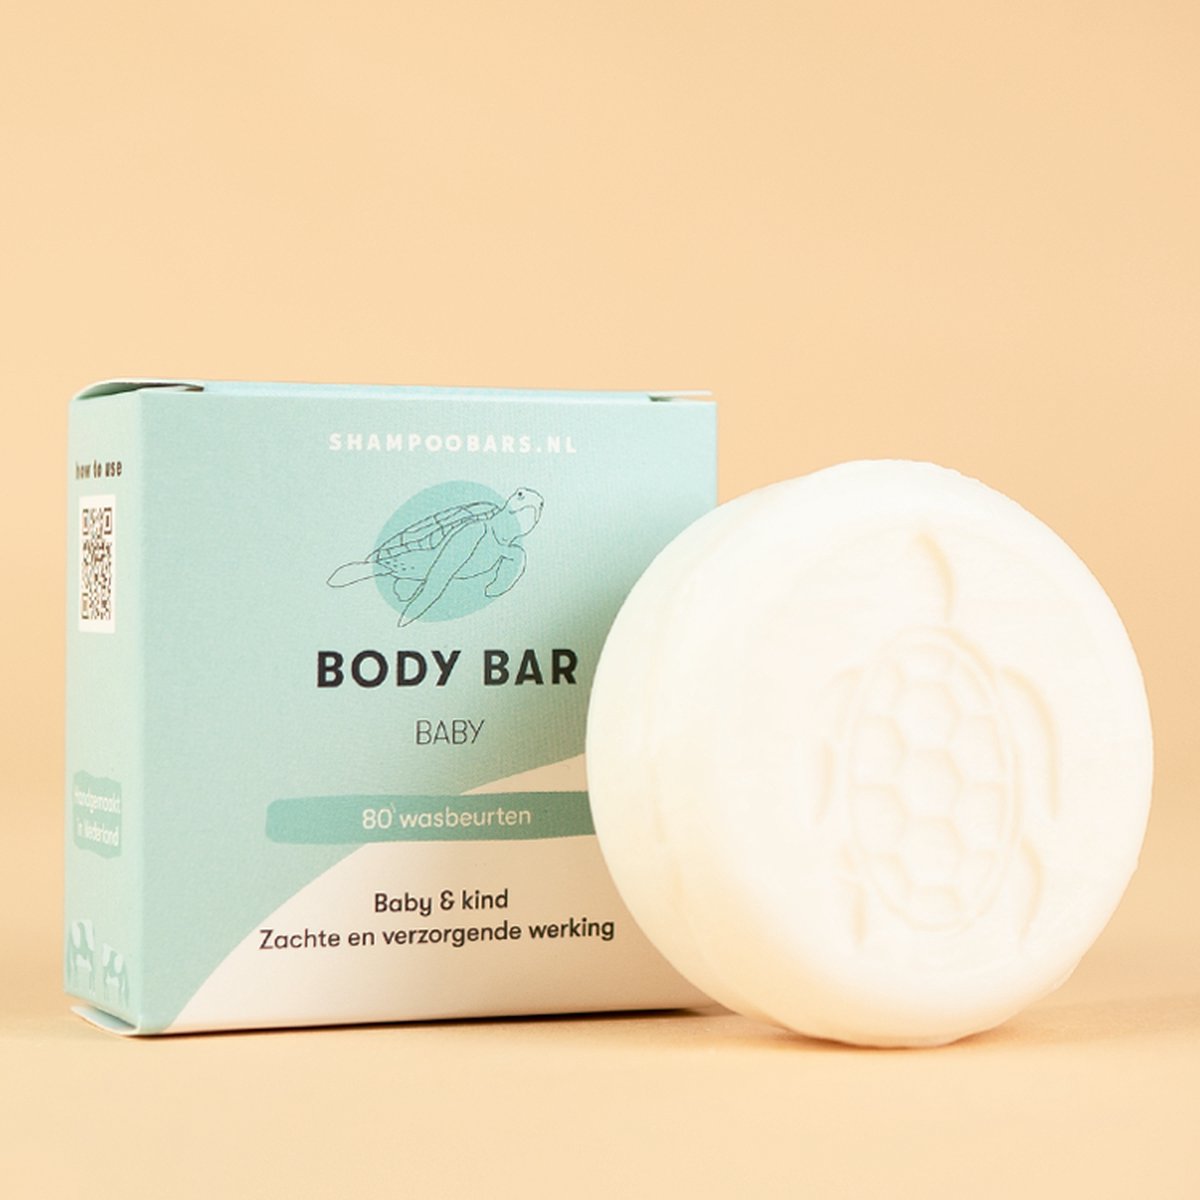 Body Bar Baby | Handgemaakt in Nederland | 80 wasbeurten | Plasticvrij | Dierproefvrij | Vegan | 100% biologisch afbreekbare verpakking